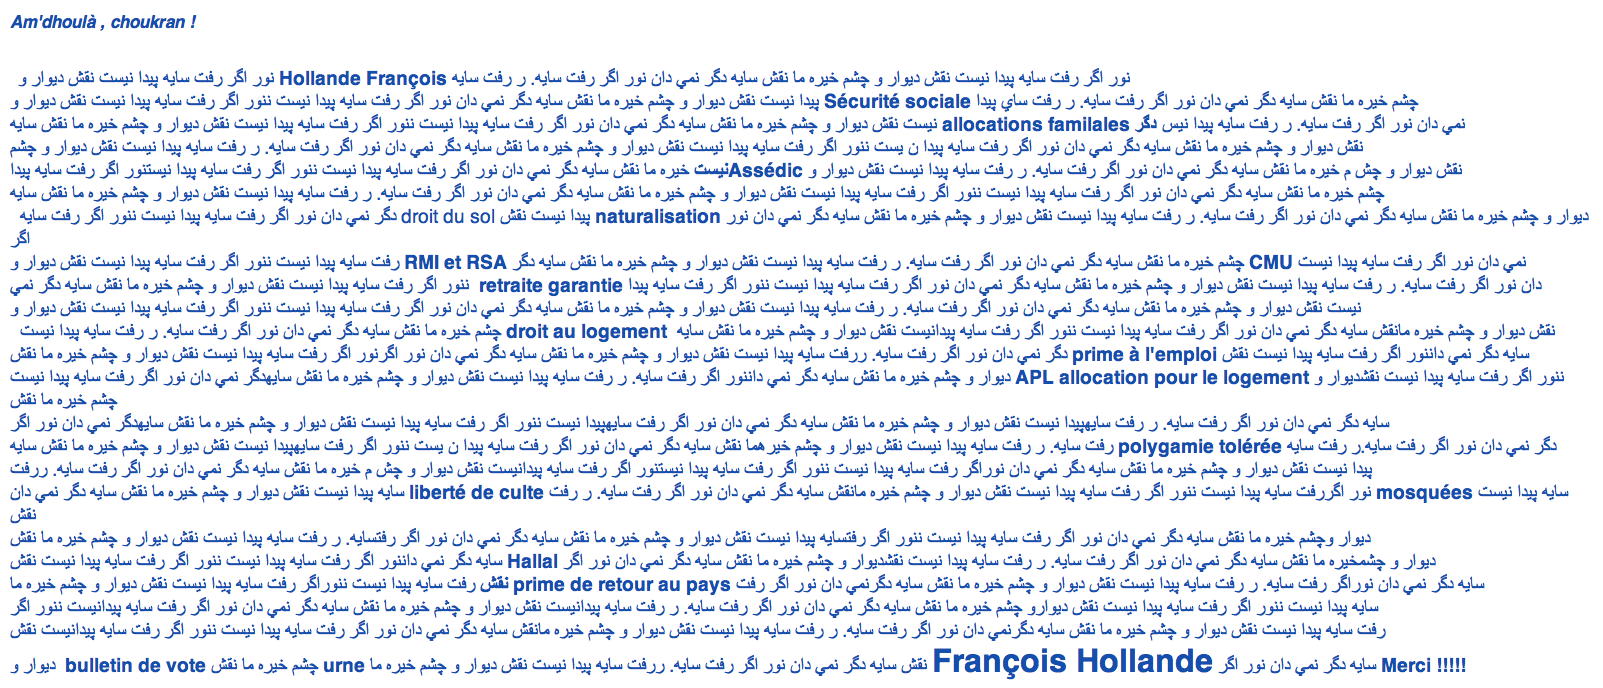 La lettre raciste, François Hollande et le Front national